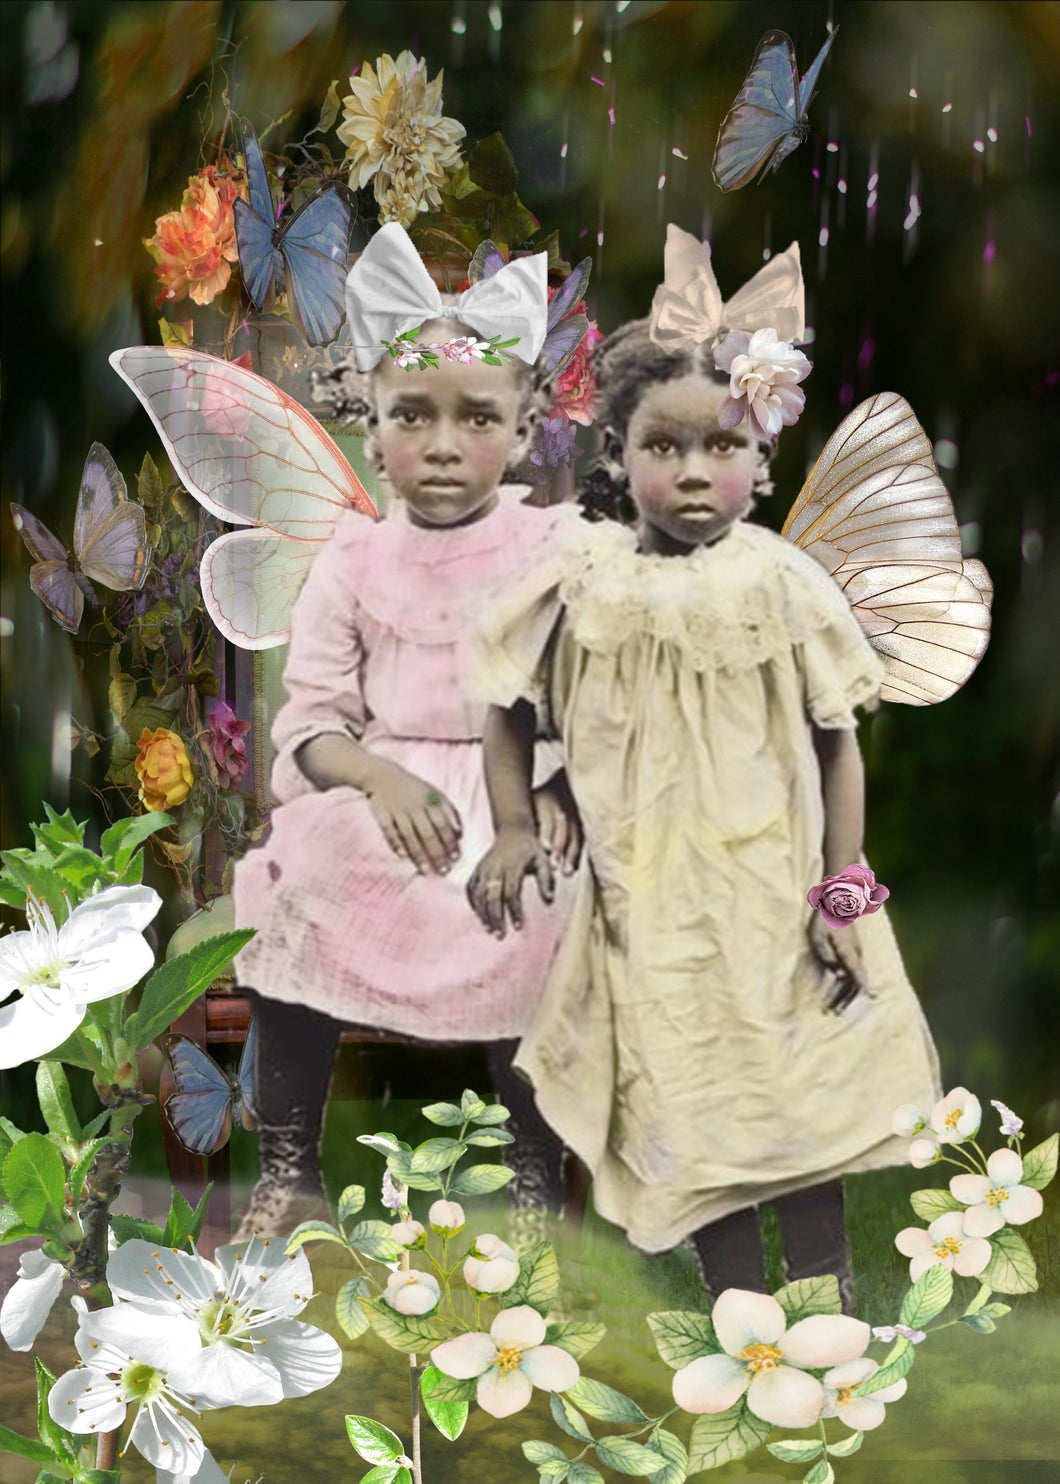 Sister Fairies